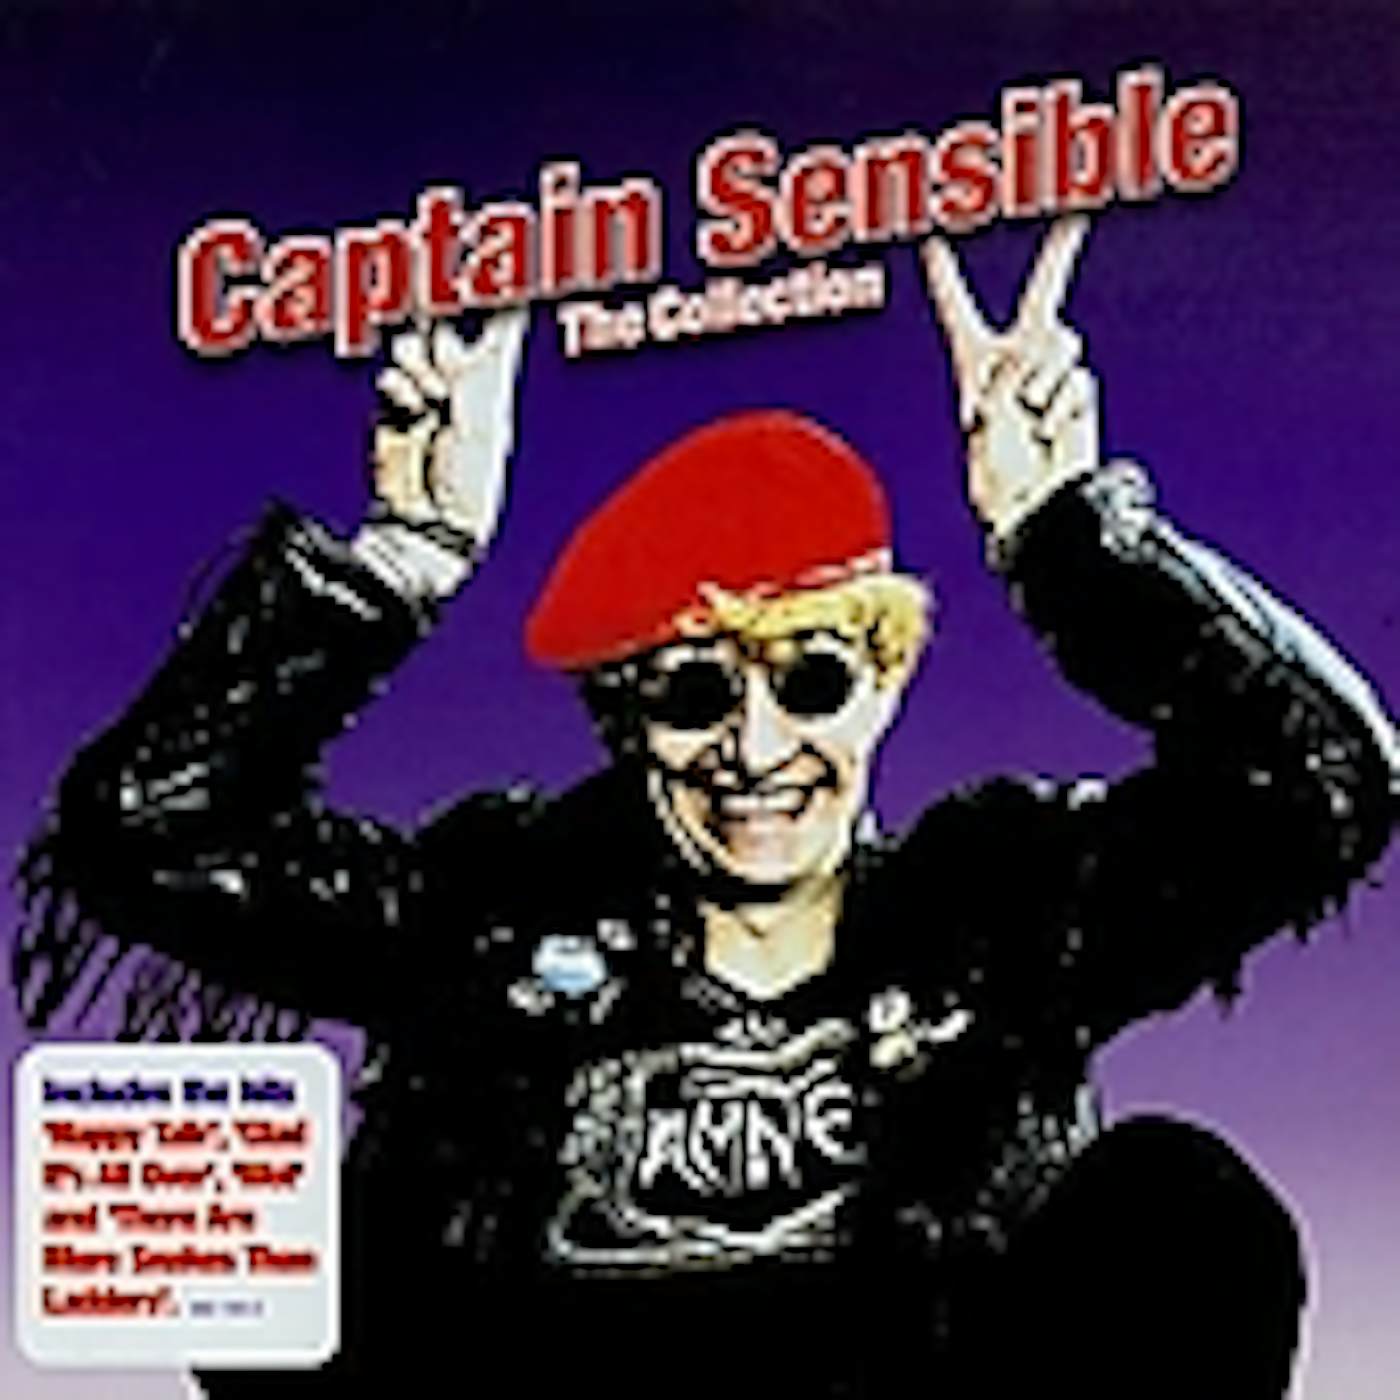 Captain Sensible COLLECTION CD